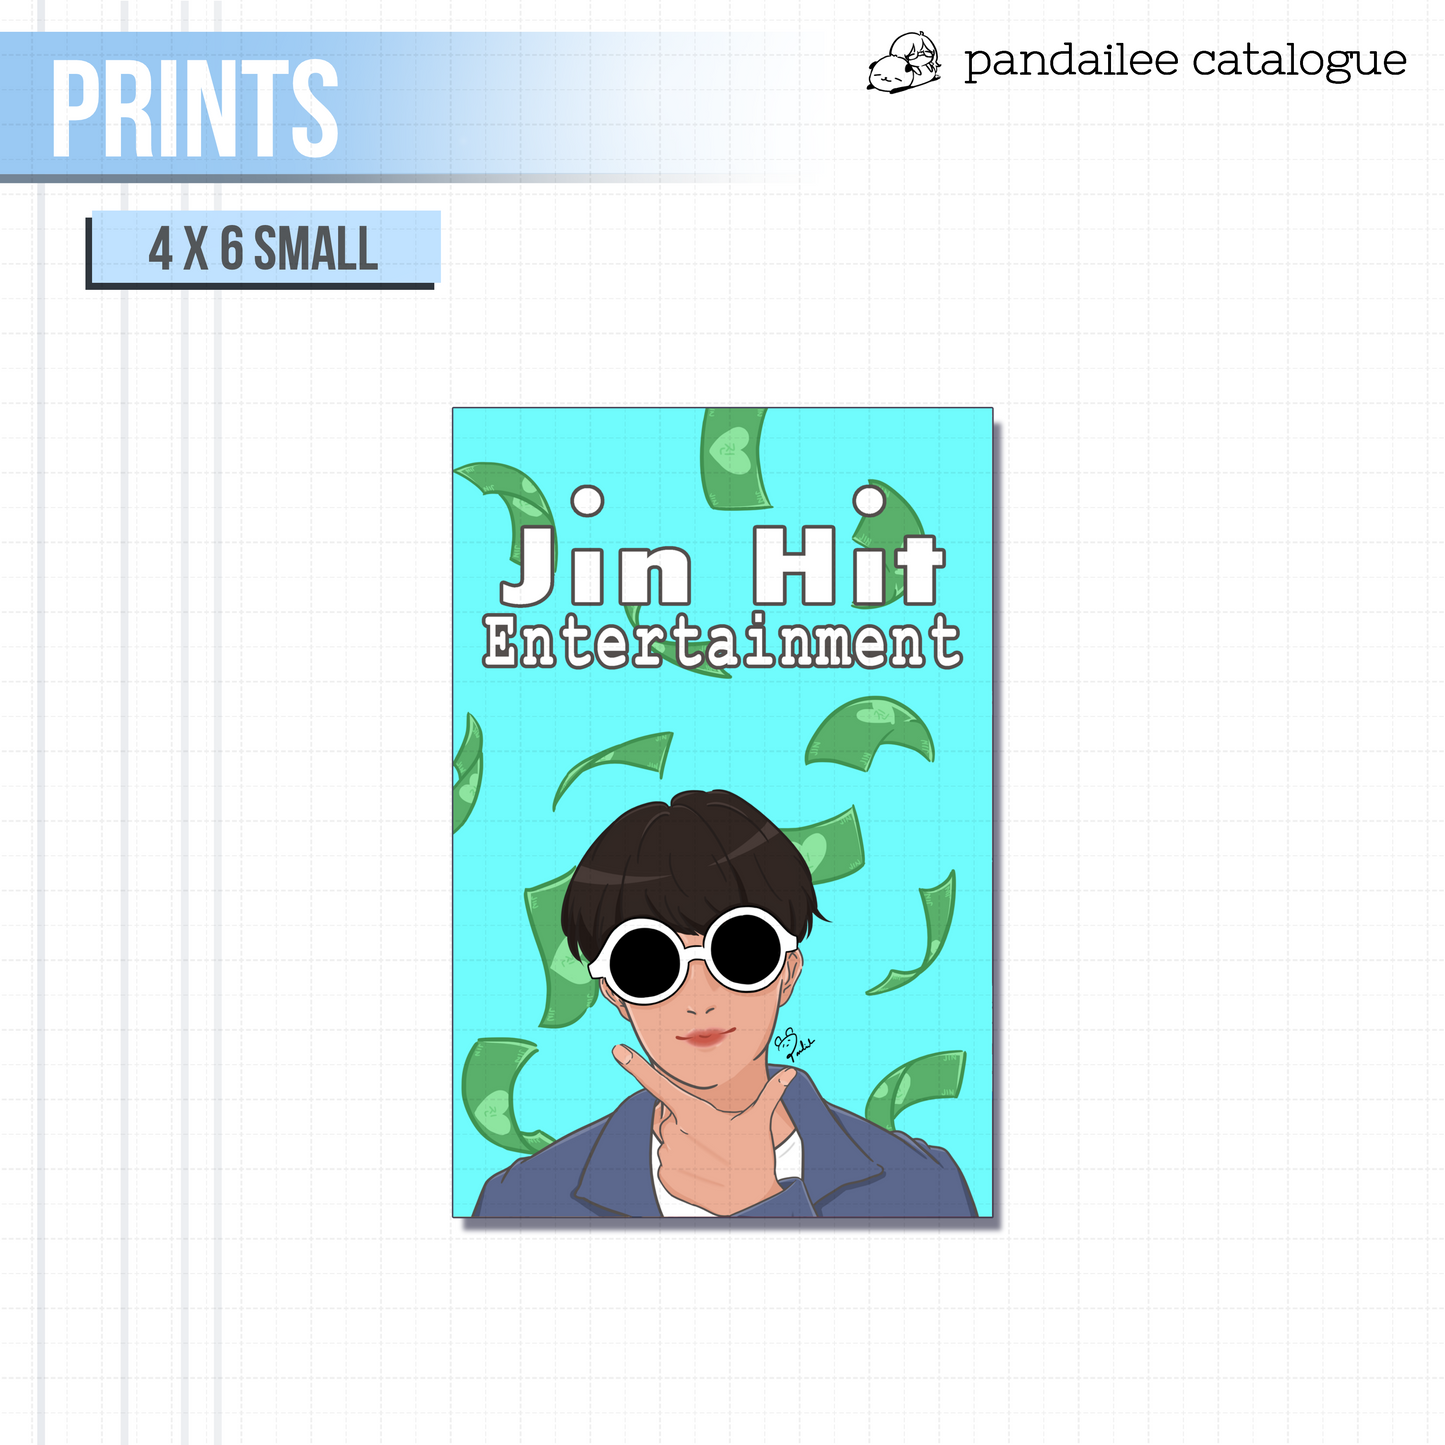 Prints ◦ Small┊Jin Hit